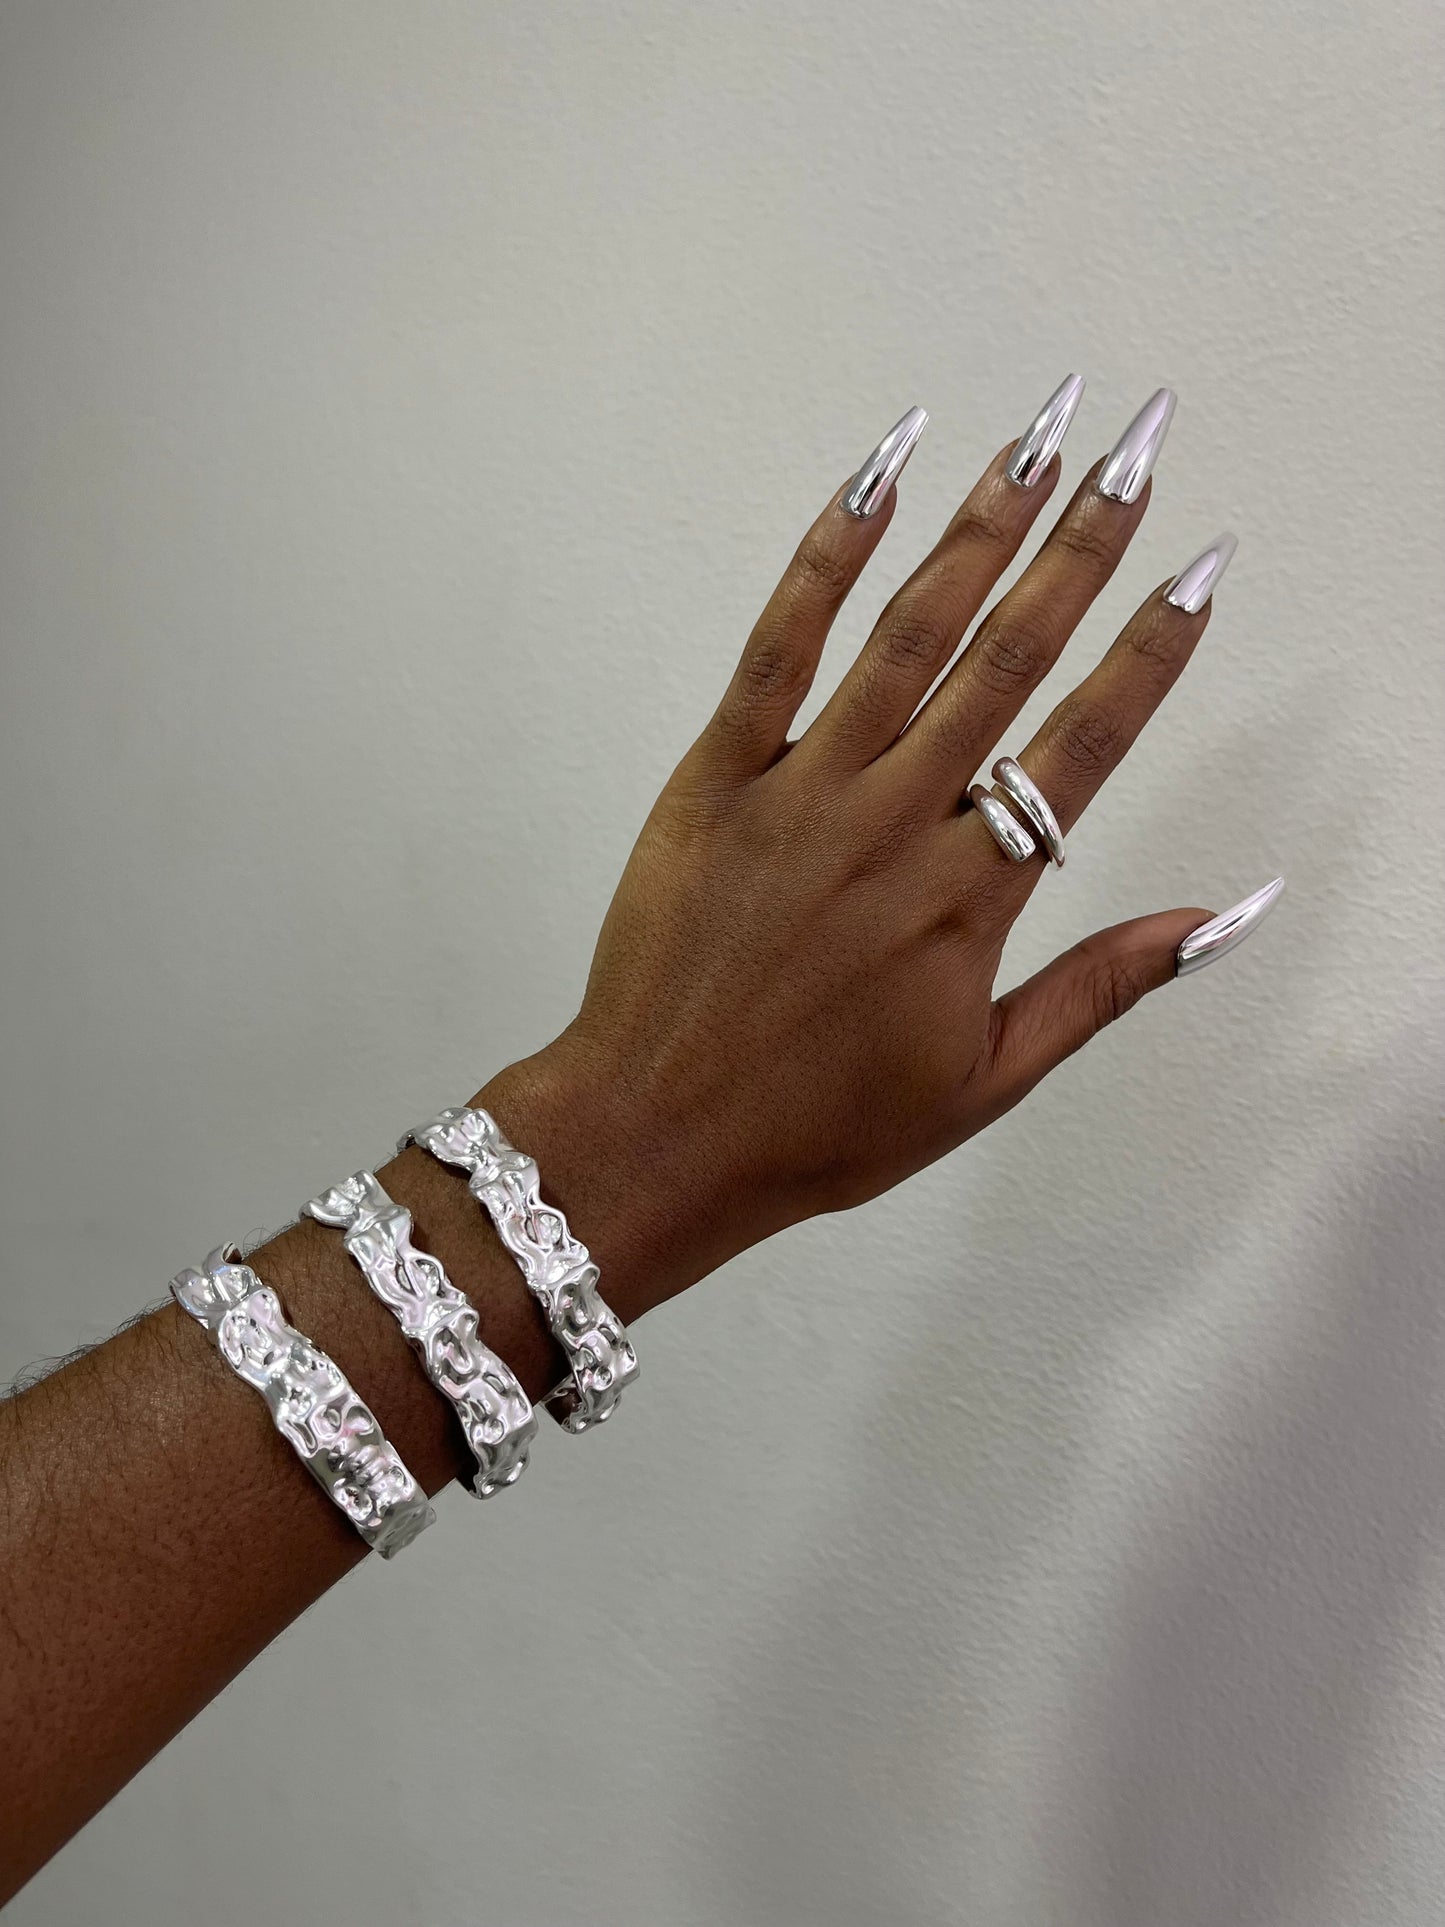 Silver Crumpled Bracelet Cuff